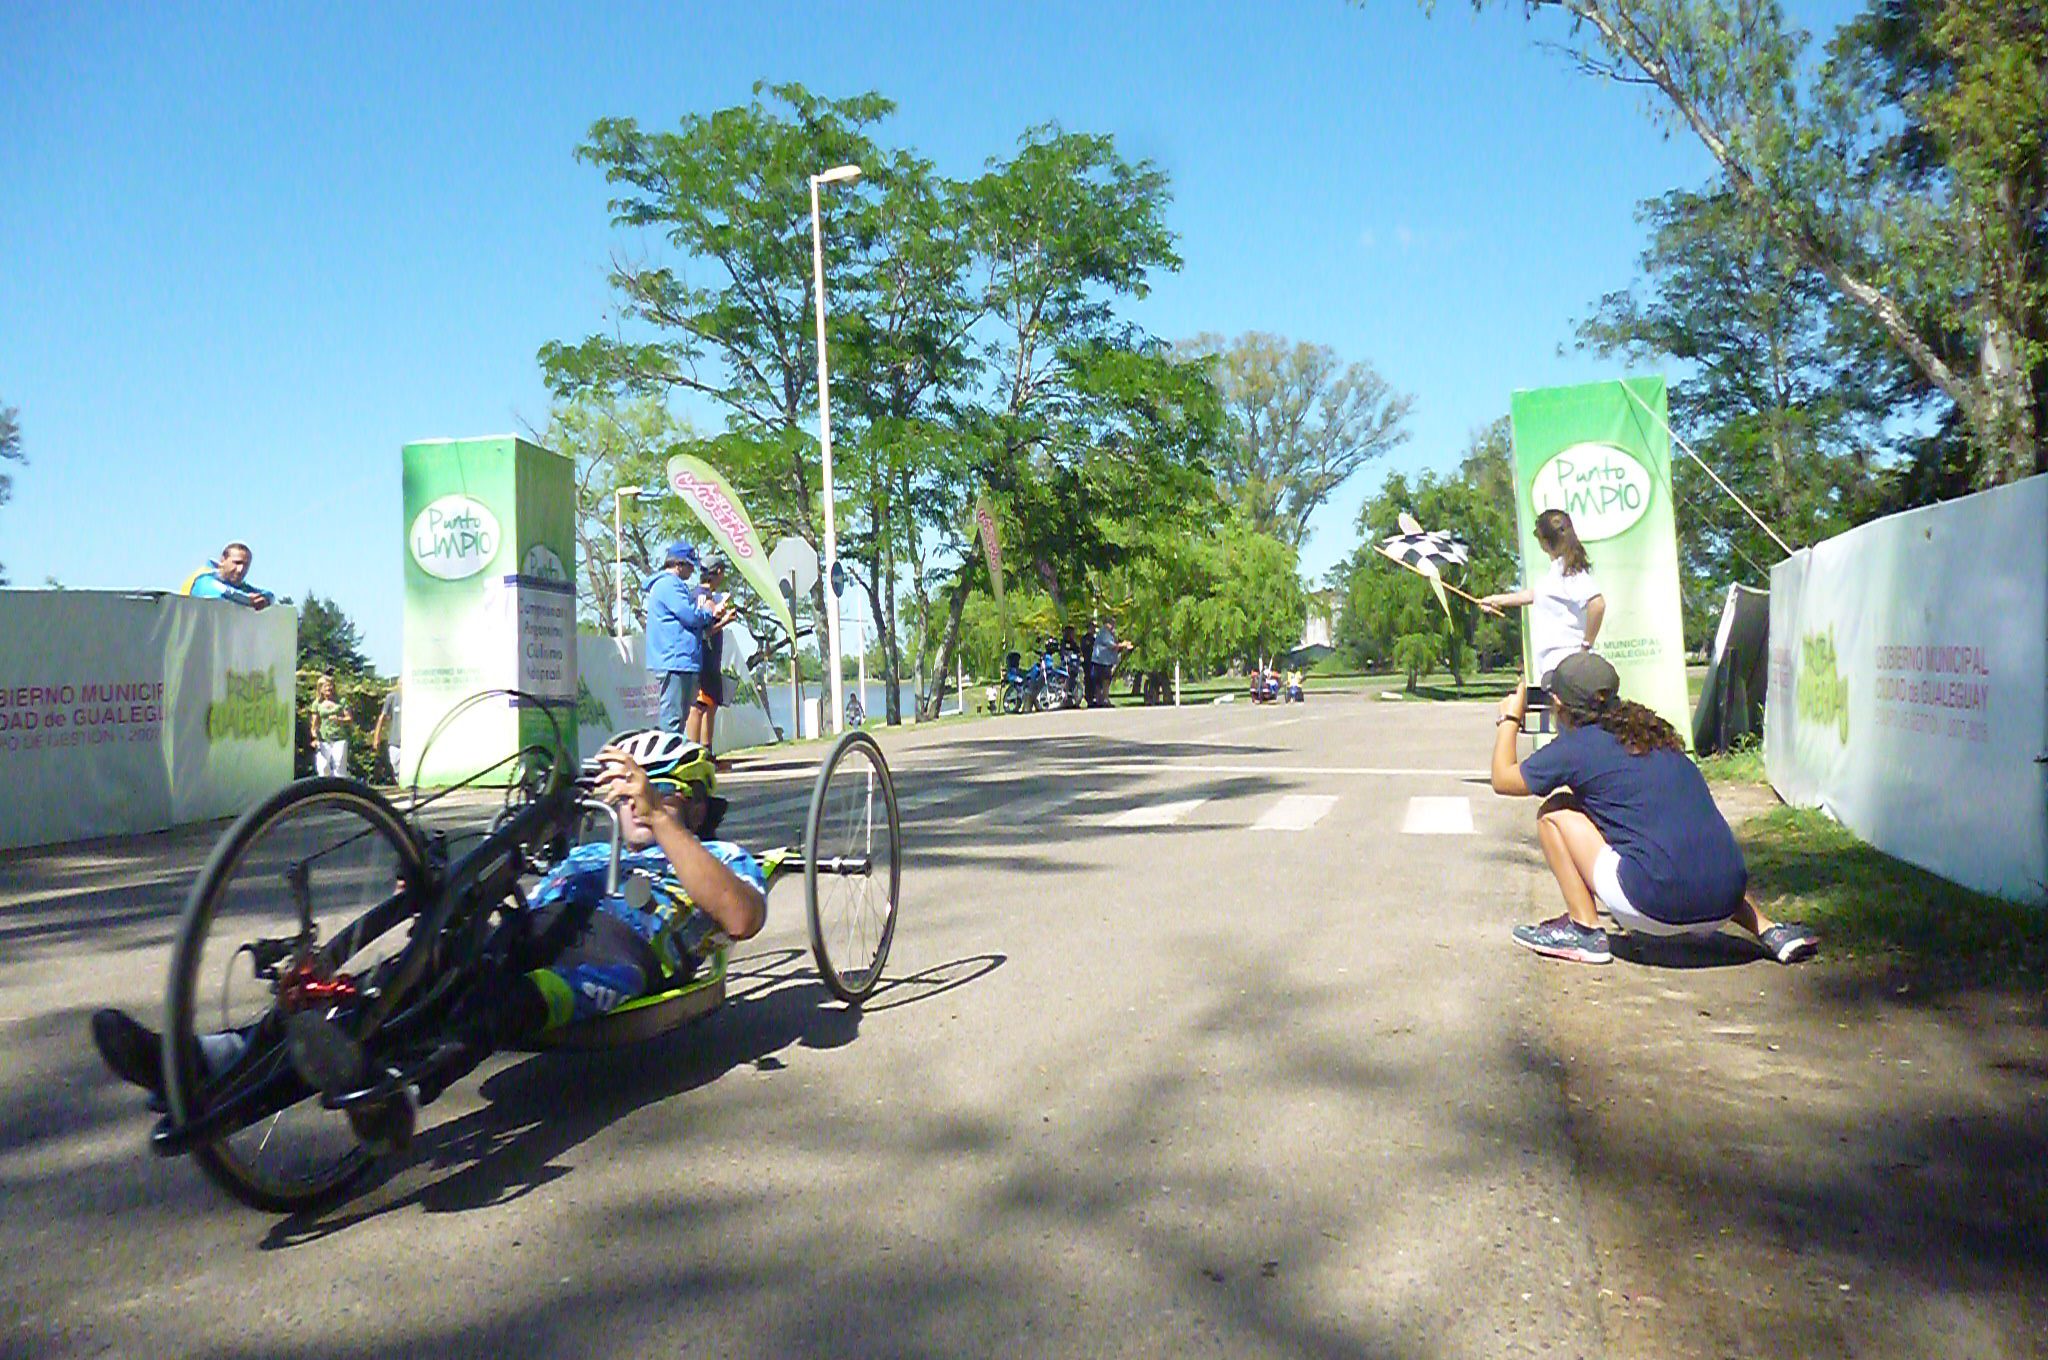 Paraciclismo: Mariela Delgado y Romero-Villalba, campeones argentinos